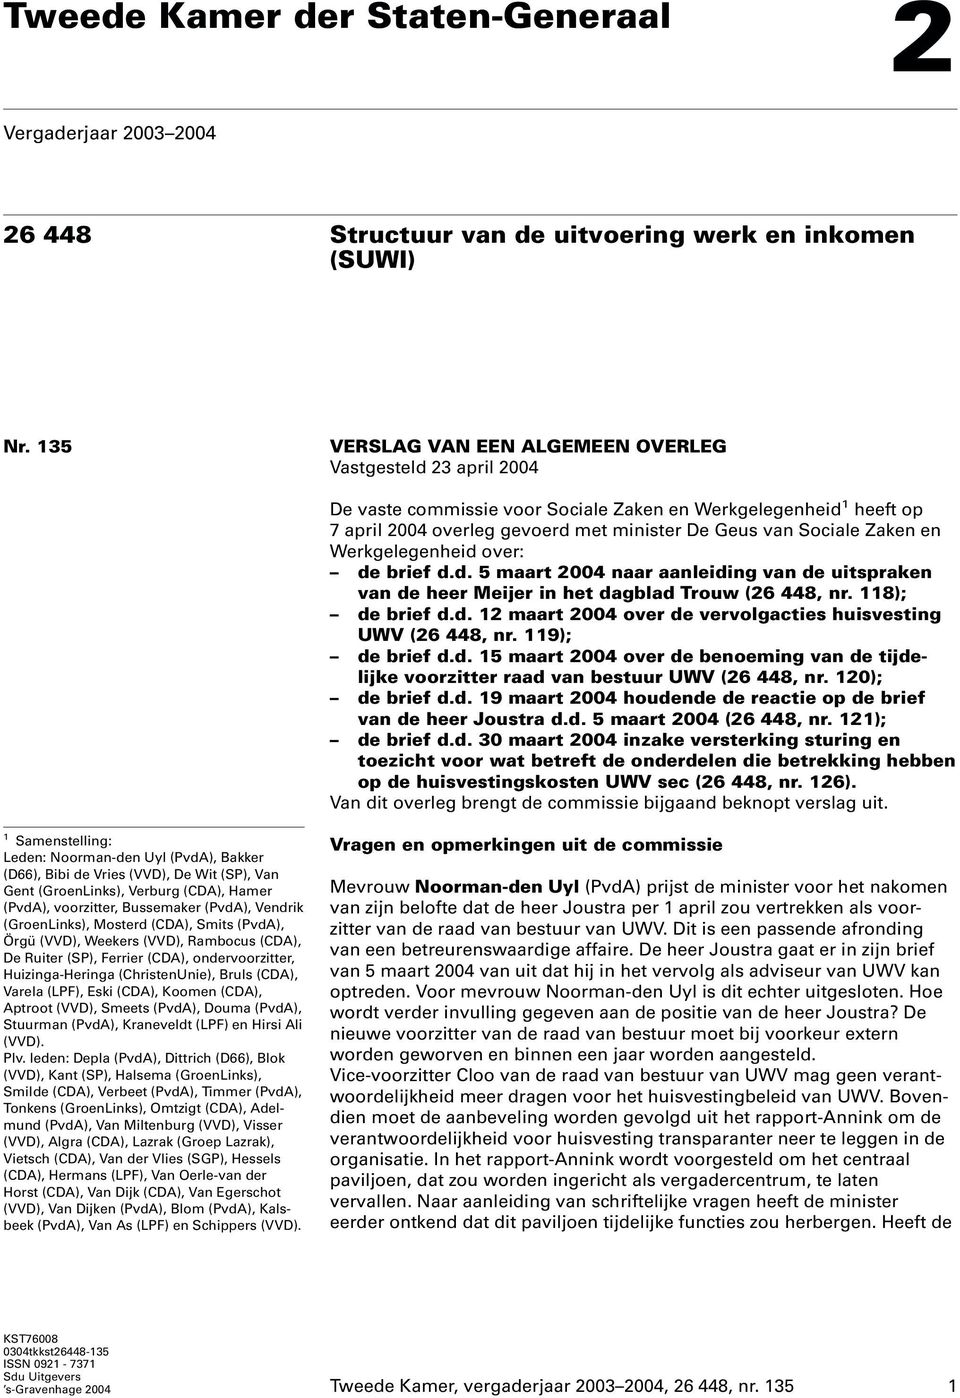 en Werkgelegenheid over: de brief d.d. 5 maart 2004 naar aanleiding van de uitspraken van de heer Meijer in het dagblad Trouw (26 448, nr. 118); de brief d.d. 12 maart 2004 over de vervolgacties huisvesting UWV (26 448, nr.